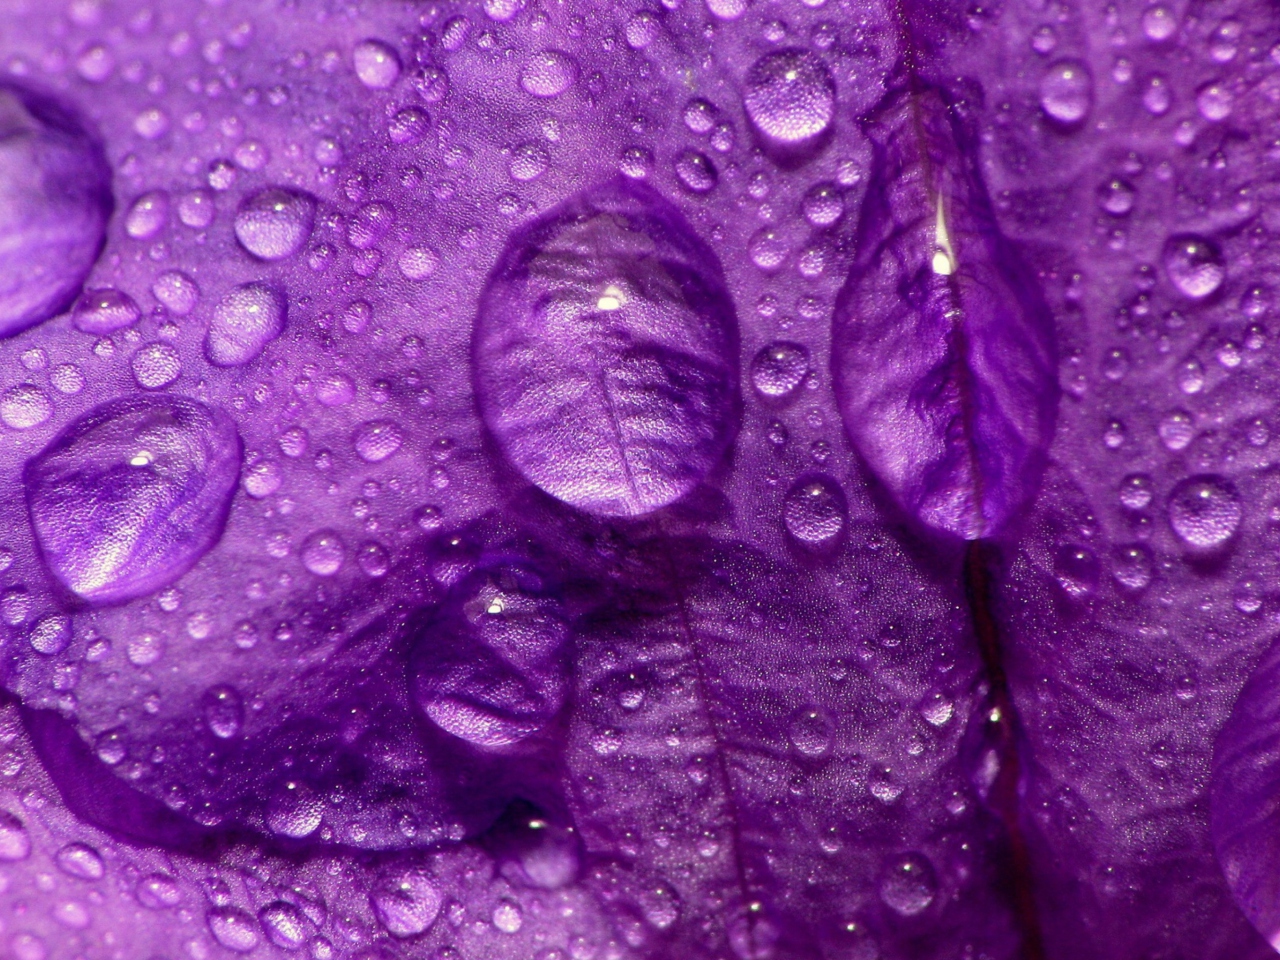 Обои Dew Drops On Violet Petals 1280x960